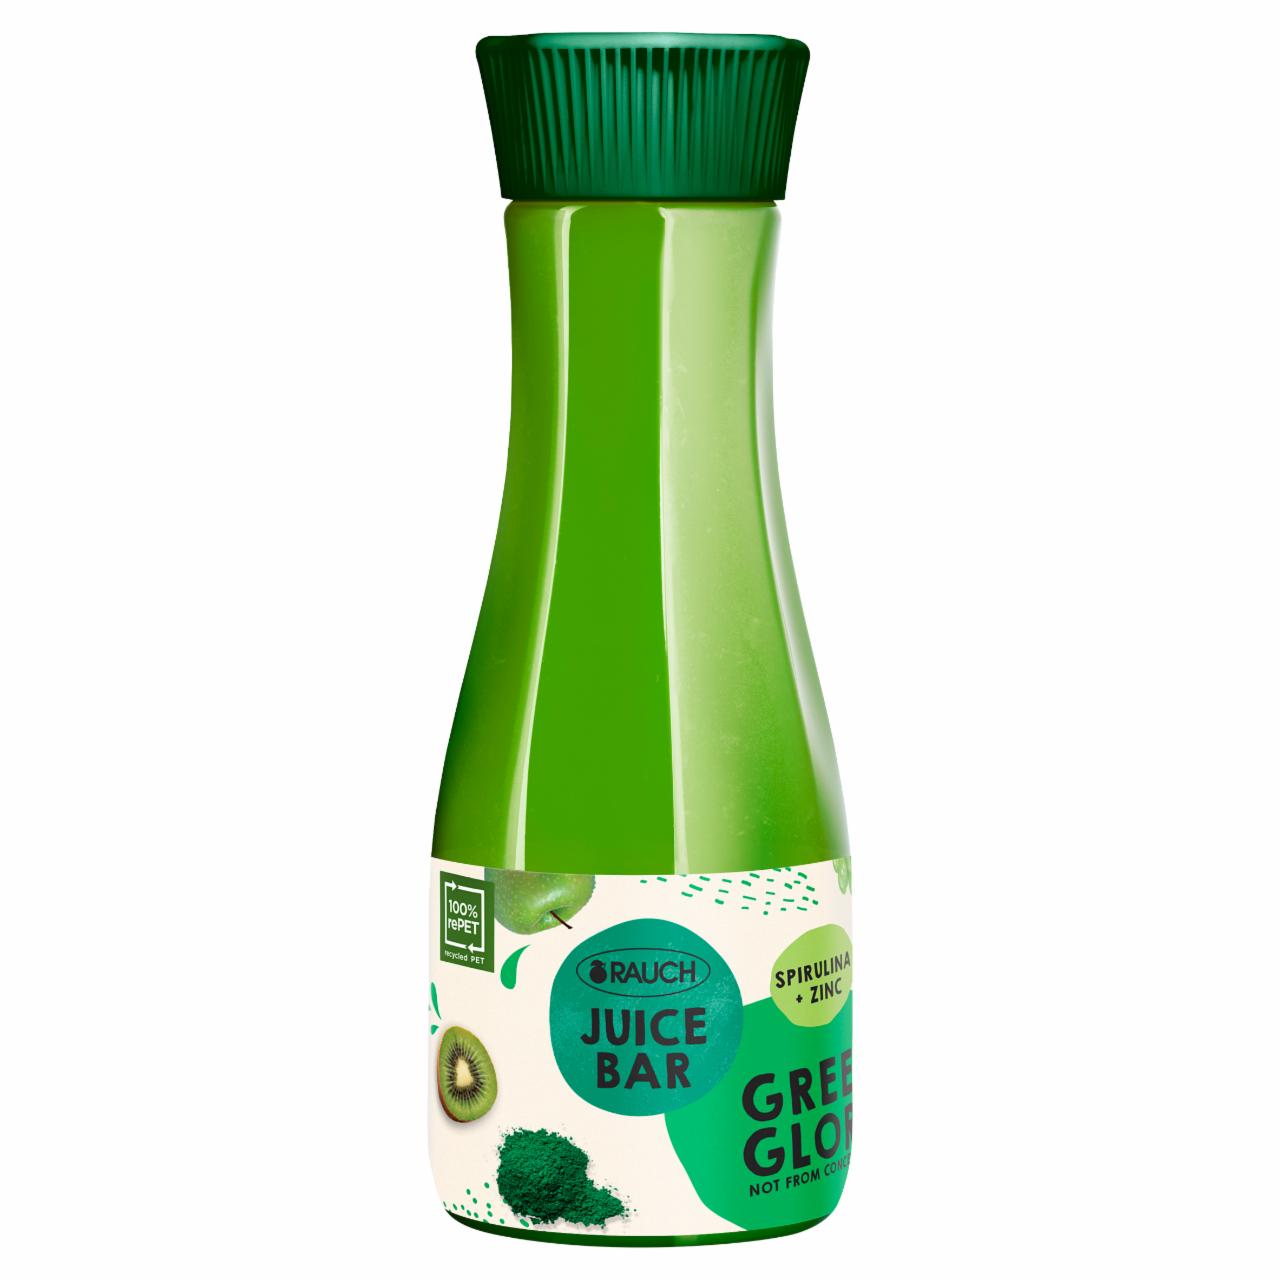 Képek - Rauch Juice Bar Green Glory vegyes gyümölcs- és zöldségital C-vitaminnal, cinkkel 800 ml